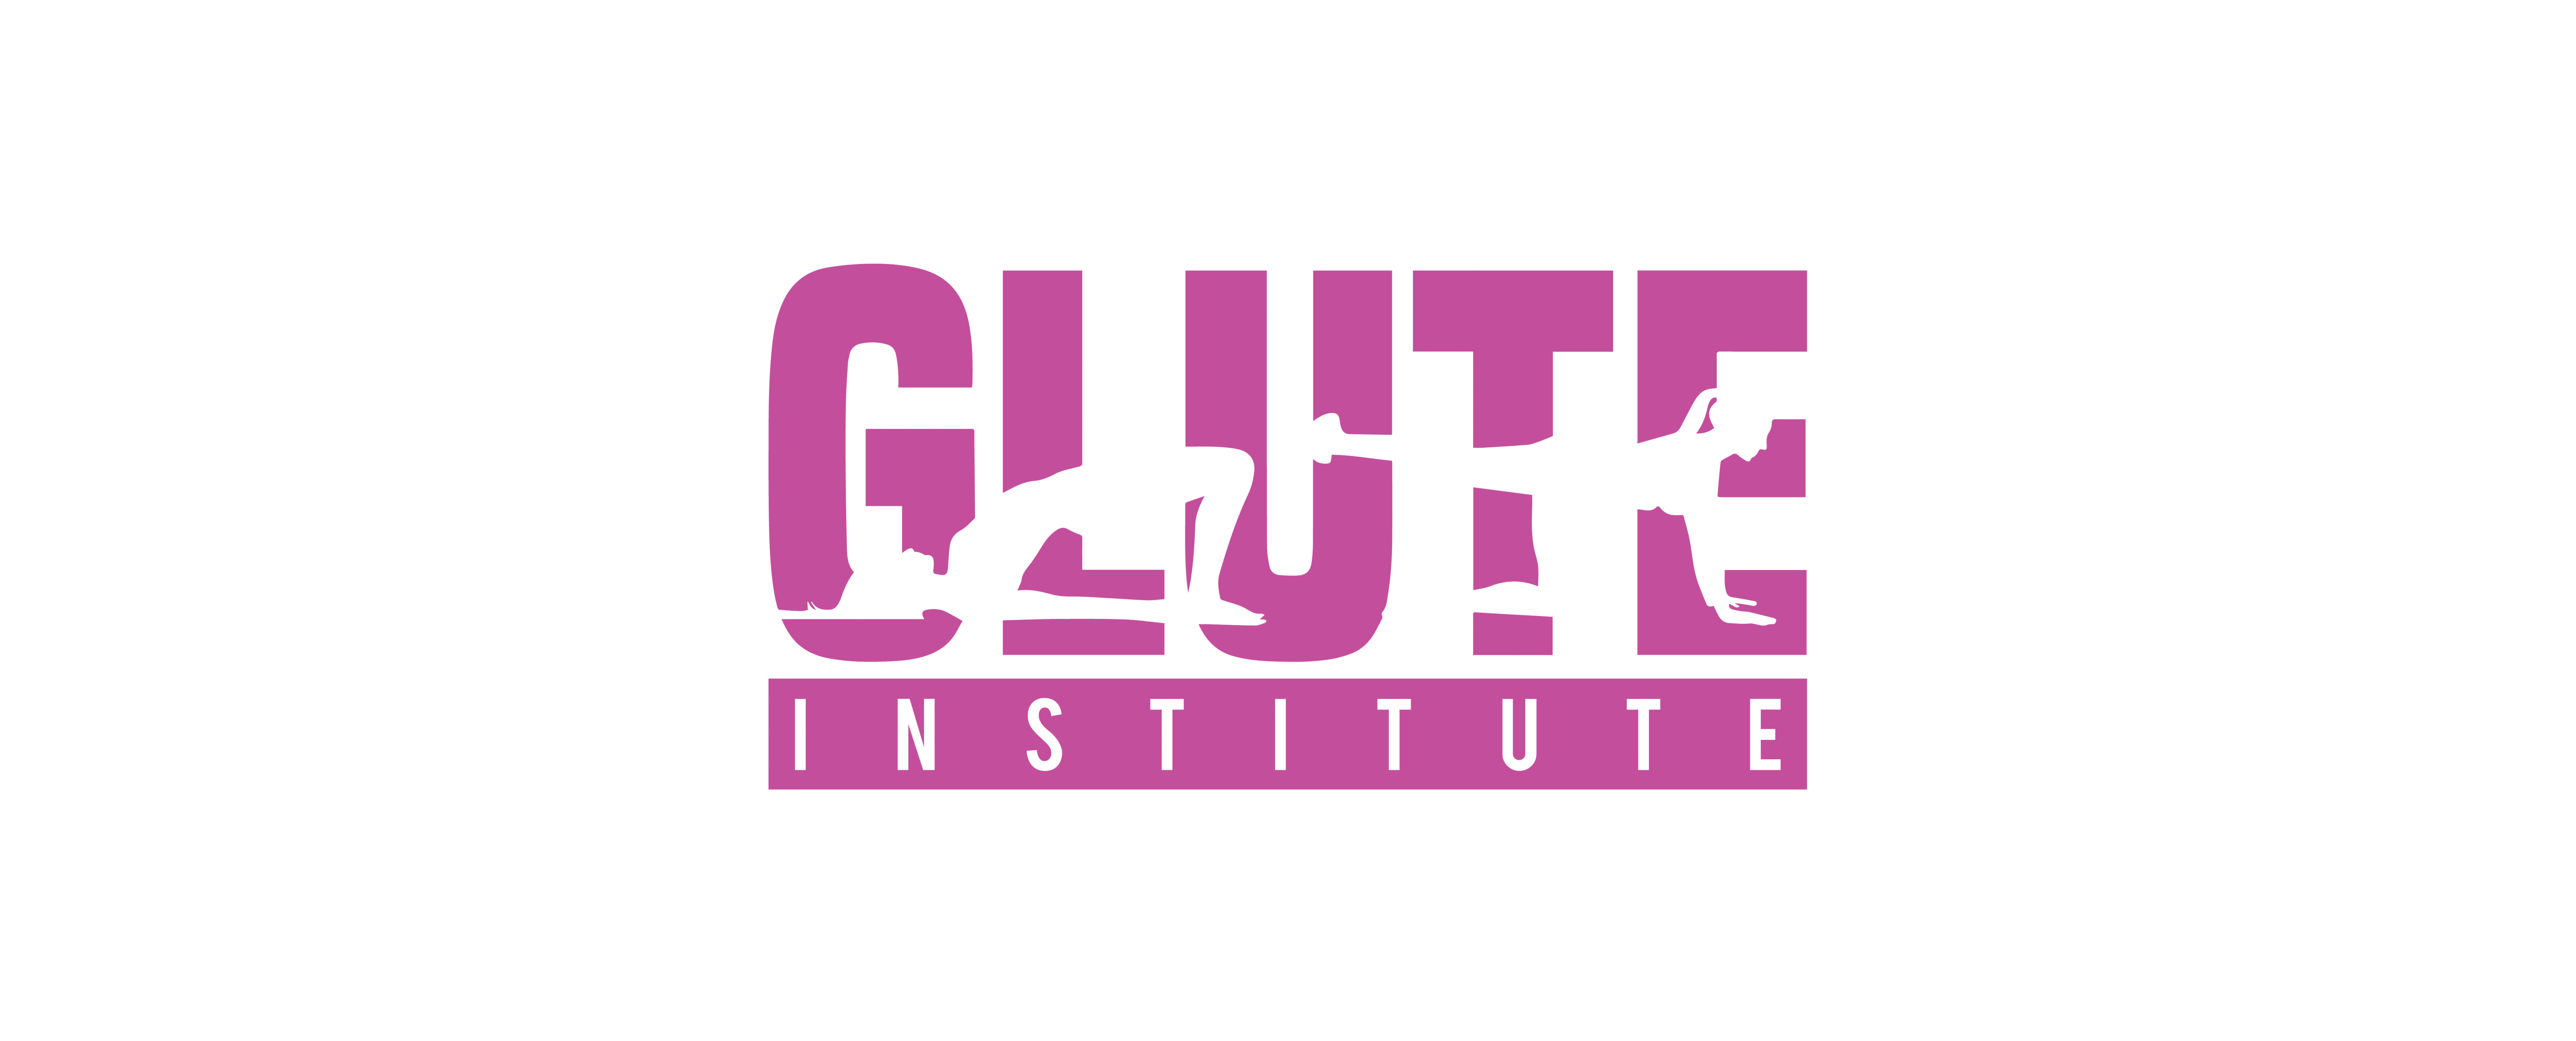 Why the Glute Institute? WHY the Glute Institute? Glute Institute